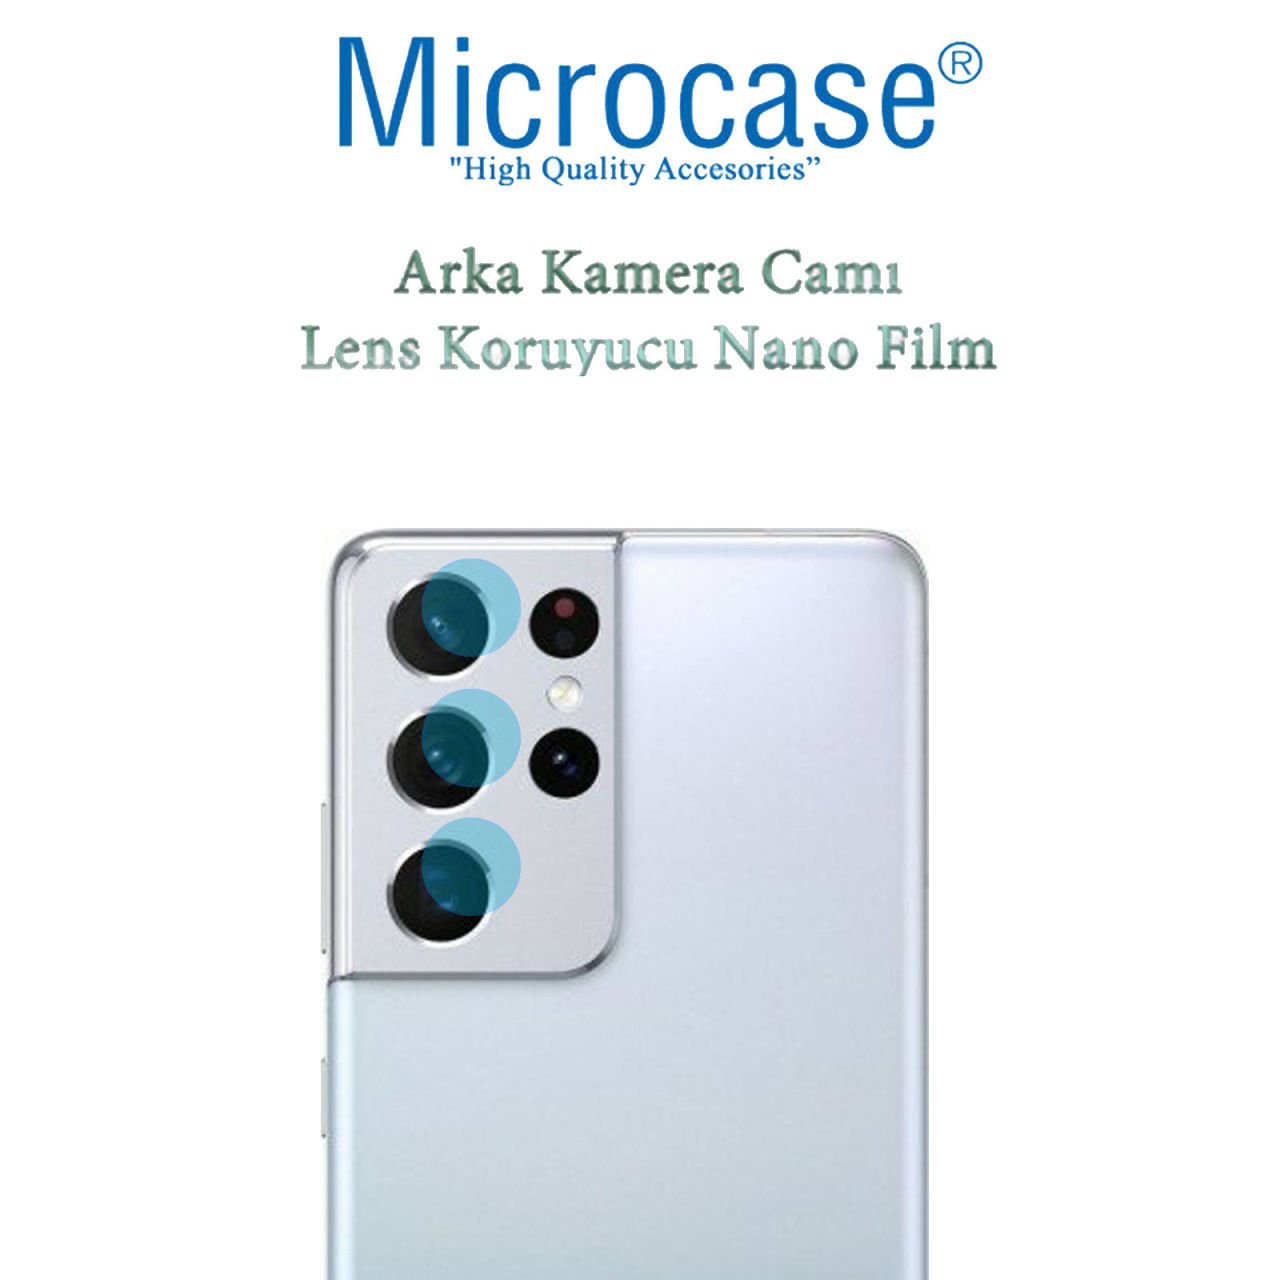 Microcase Samsung Galaxy S21 Ultra Kamera Camı Lens Koruyucu Nano Esnek Film